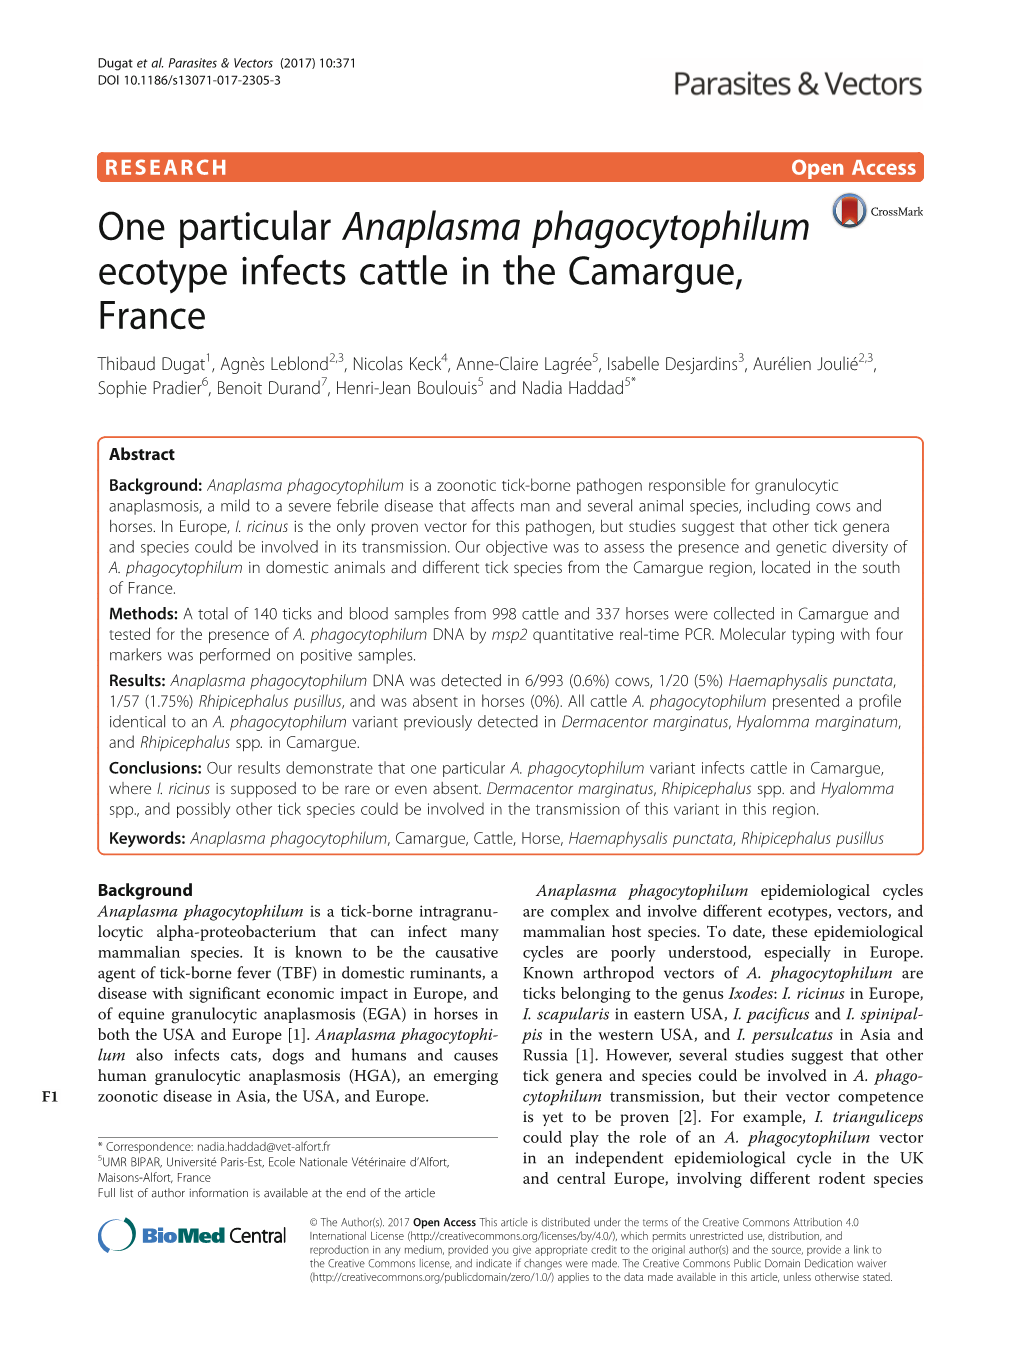 One Particular Anaplasma Phagocytophilum Ecotype Infects